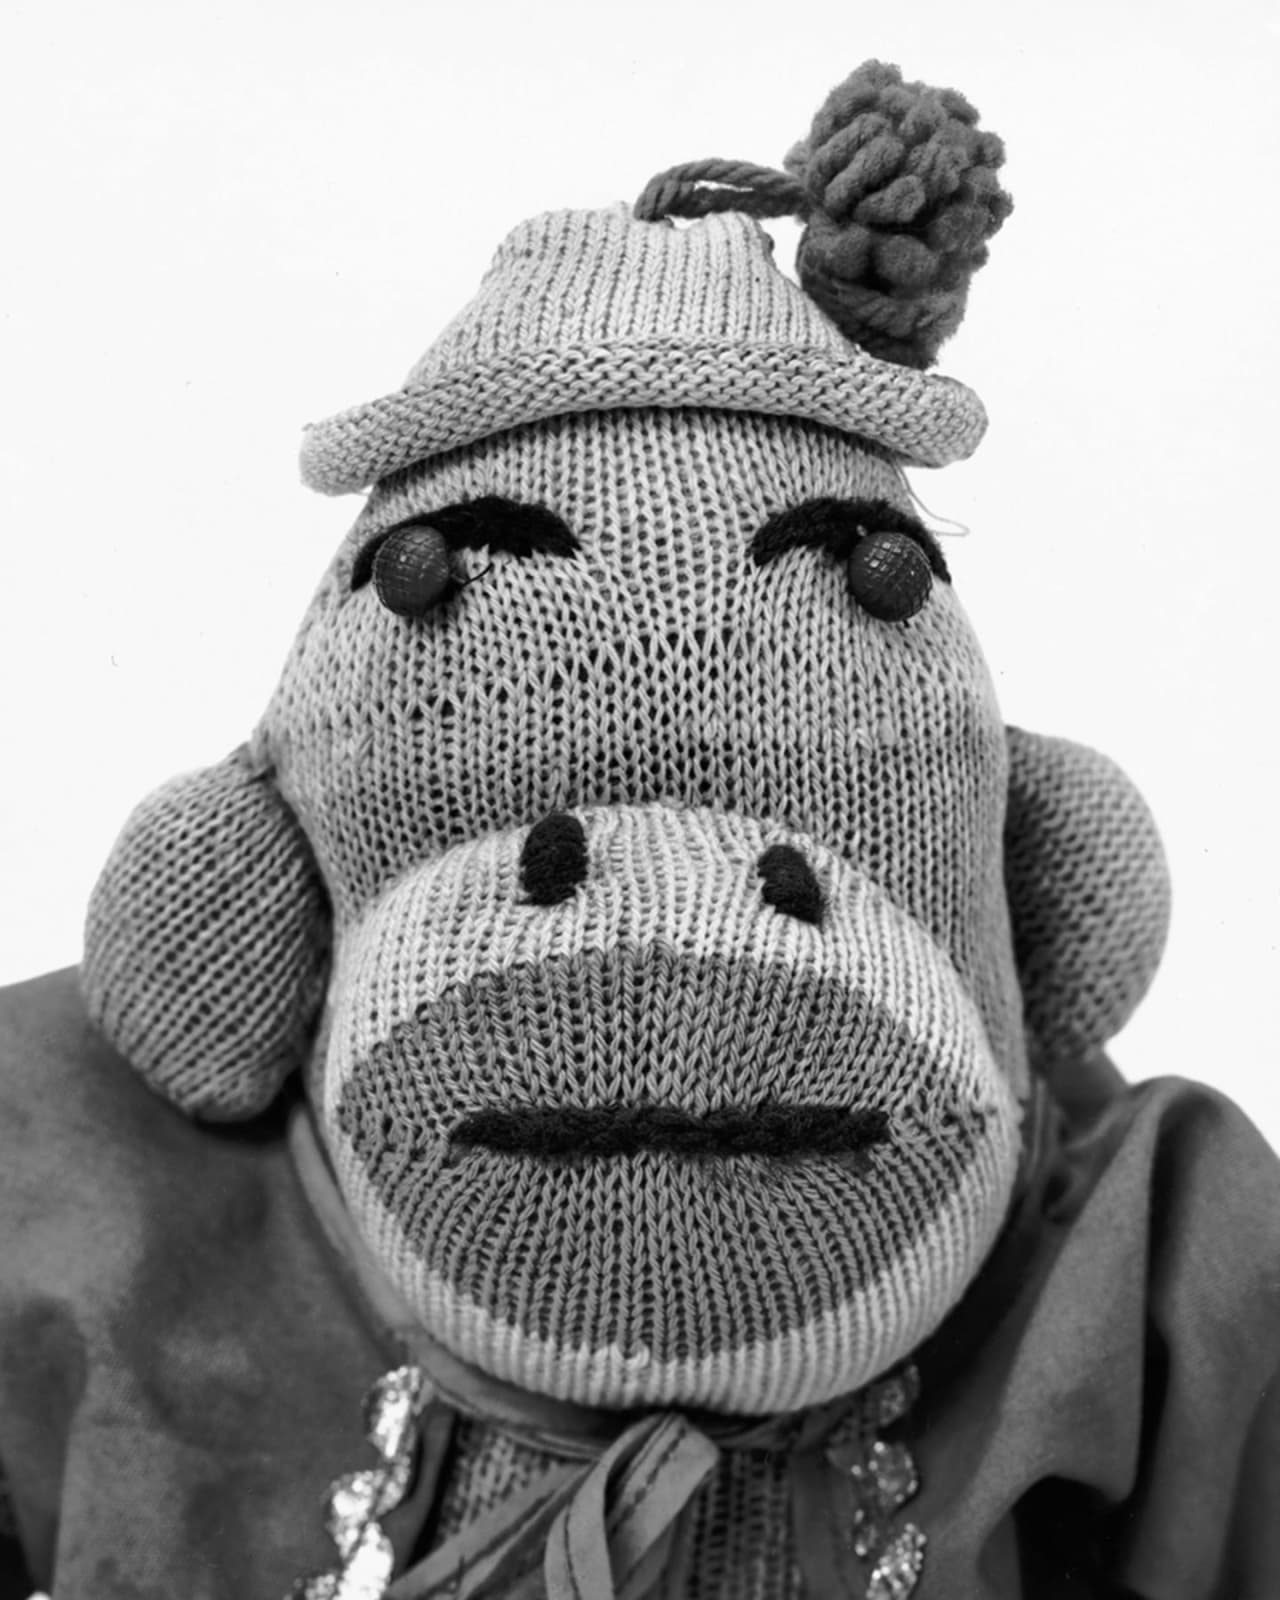 Arne Svenson, Sock Monkey 197, 2002